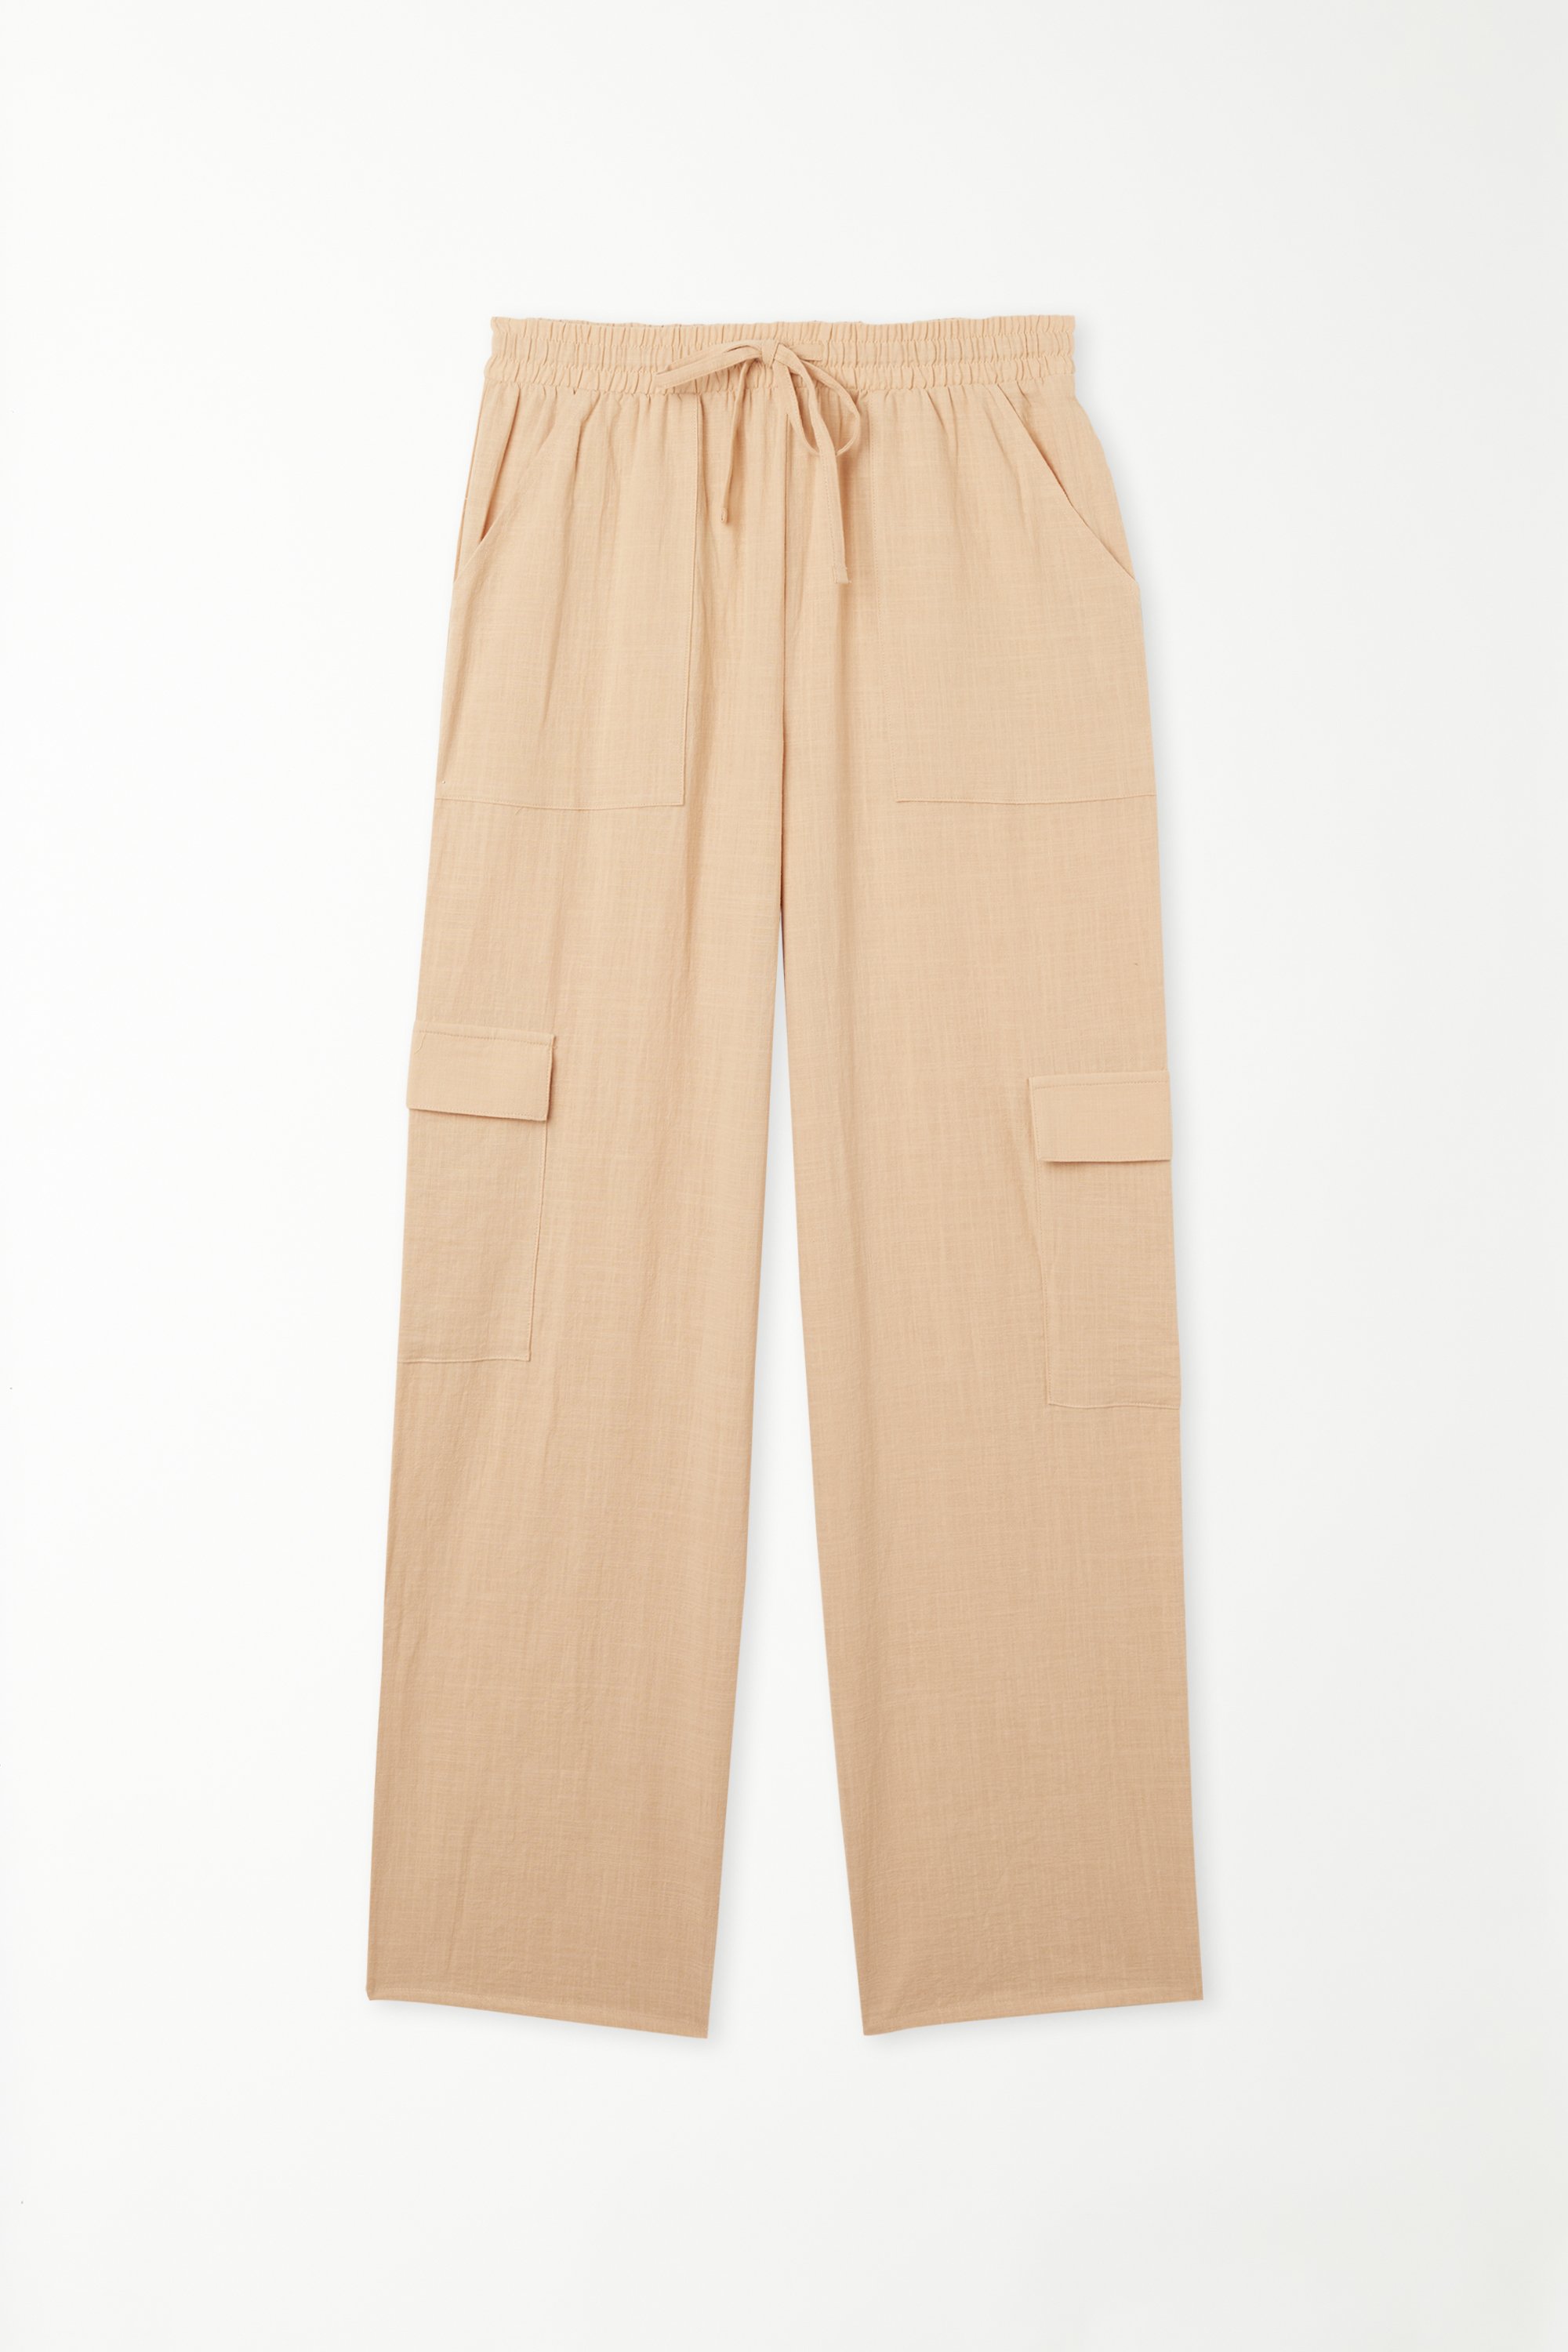 Pantaloni Lunghi in 100% Cotone Super Leggero con Tasche